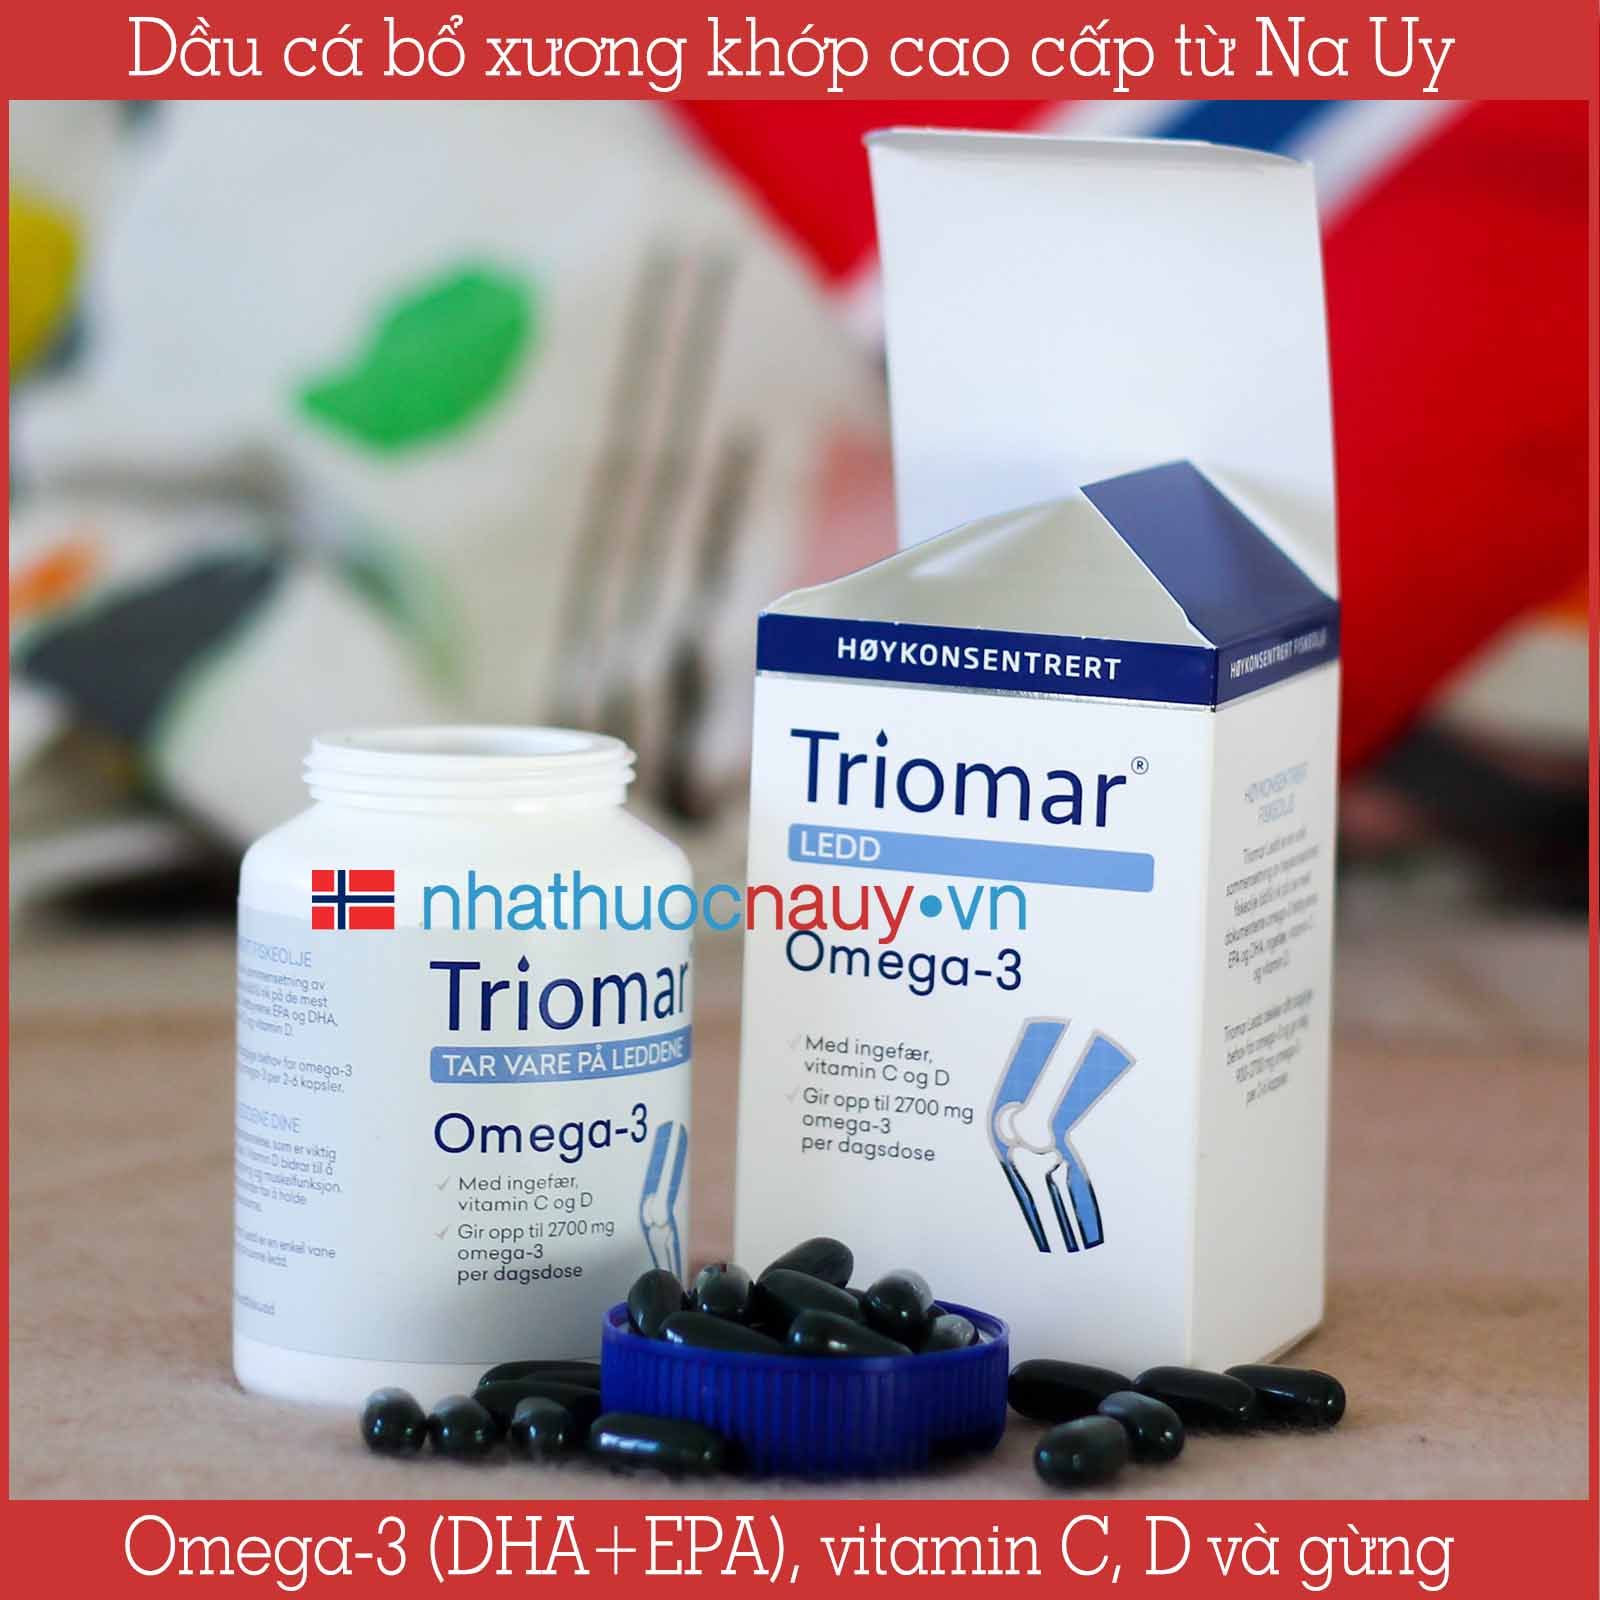 Triomar Ledd | Dầu cá bổ xương khớp với omega-3 hàm lượng cao từ Na Uy –  nhathuocnauy.vn